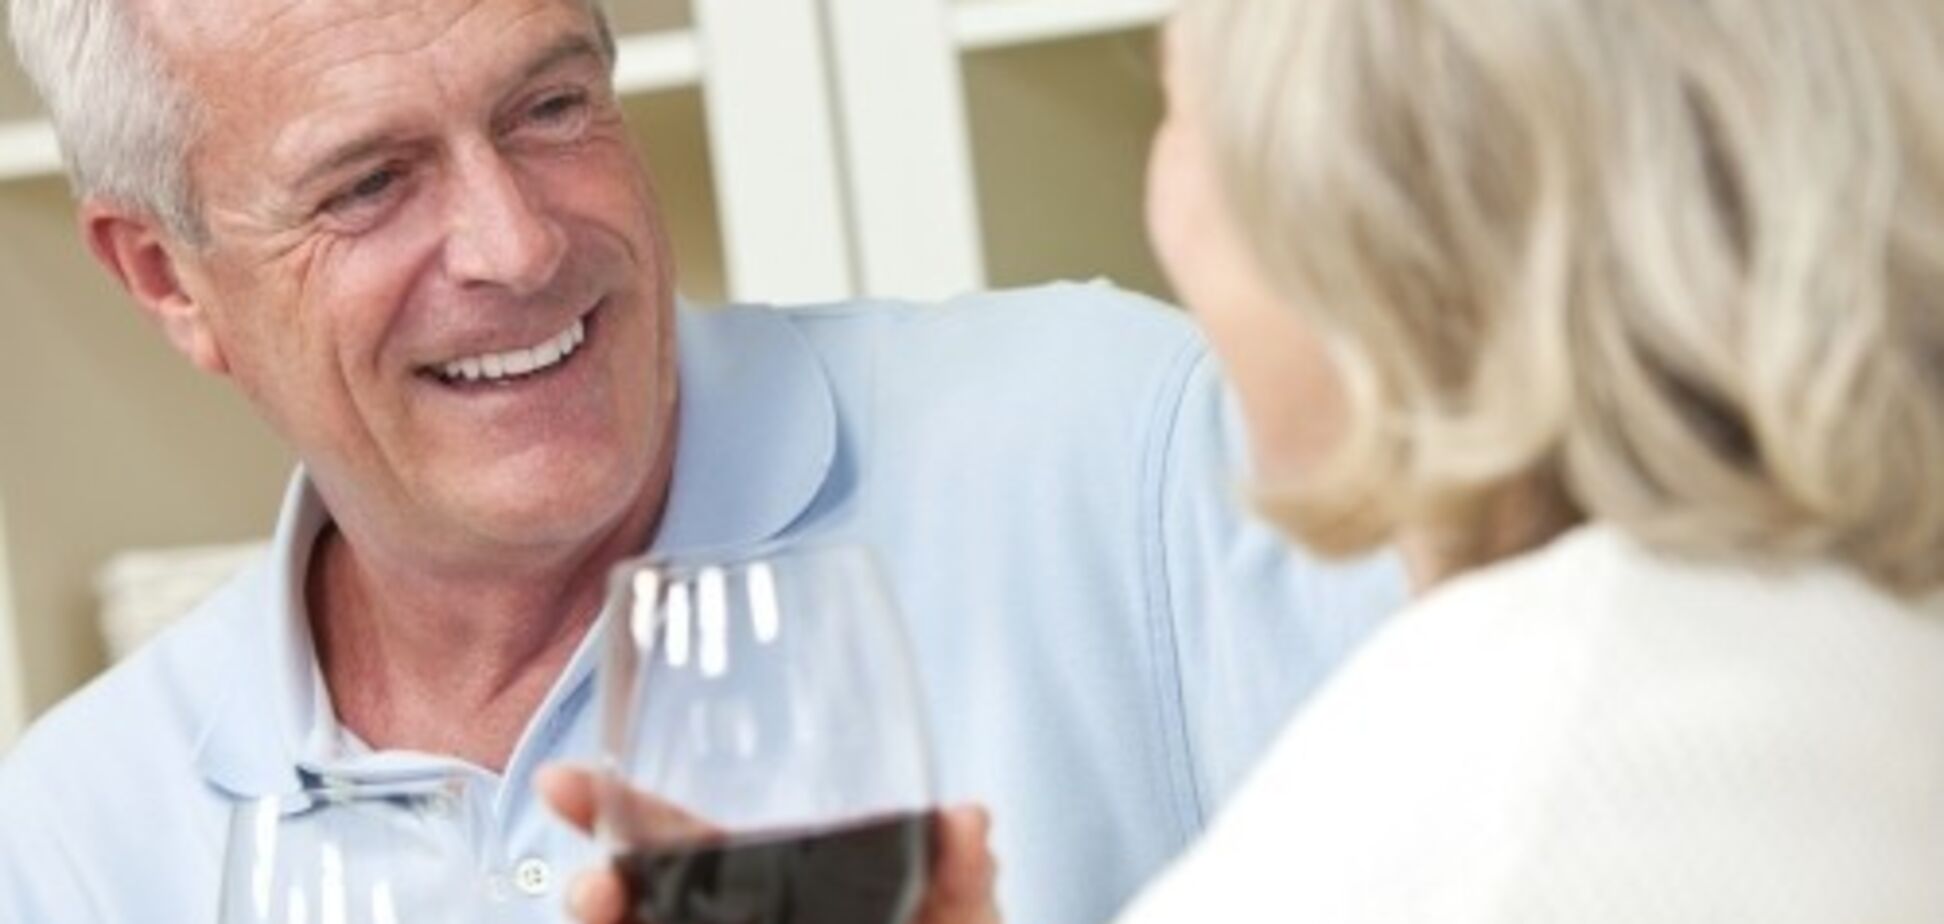 На рік довше: з'ясувалася користь алкоголю для літніх людей